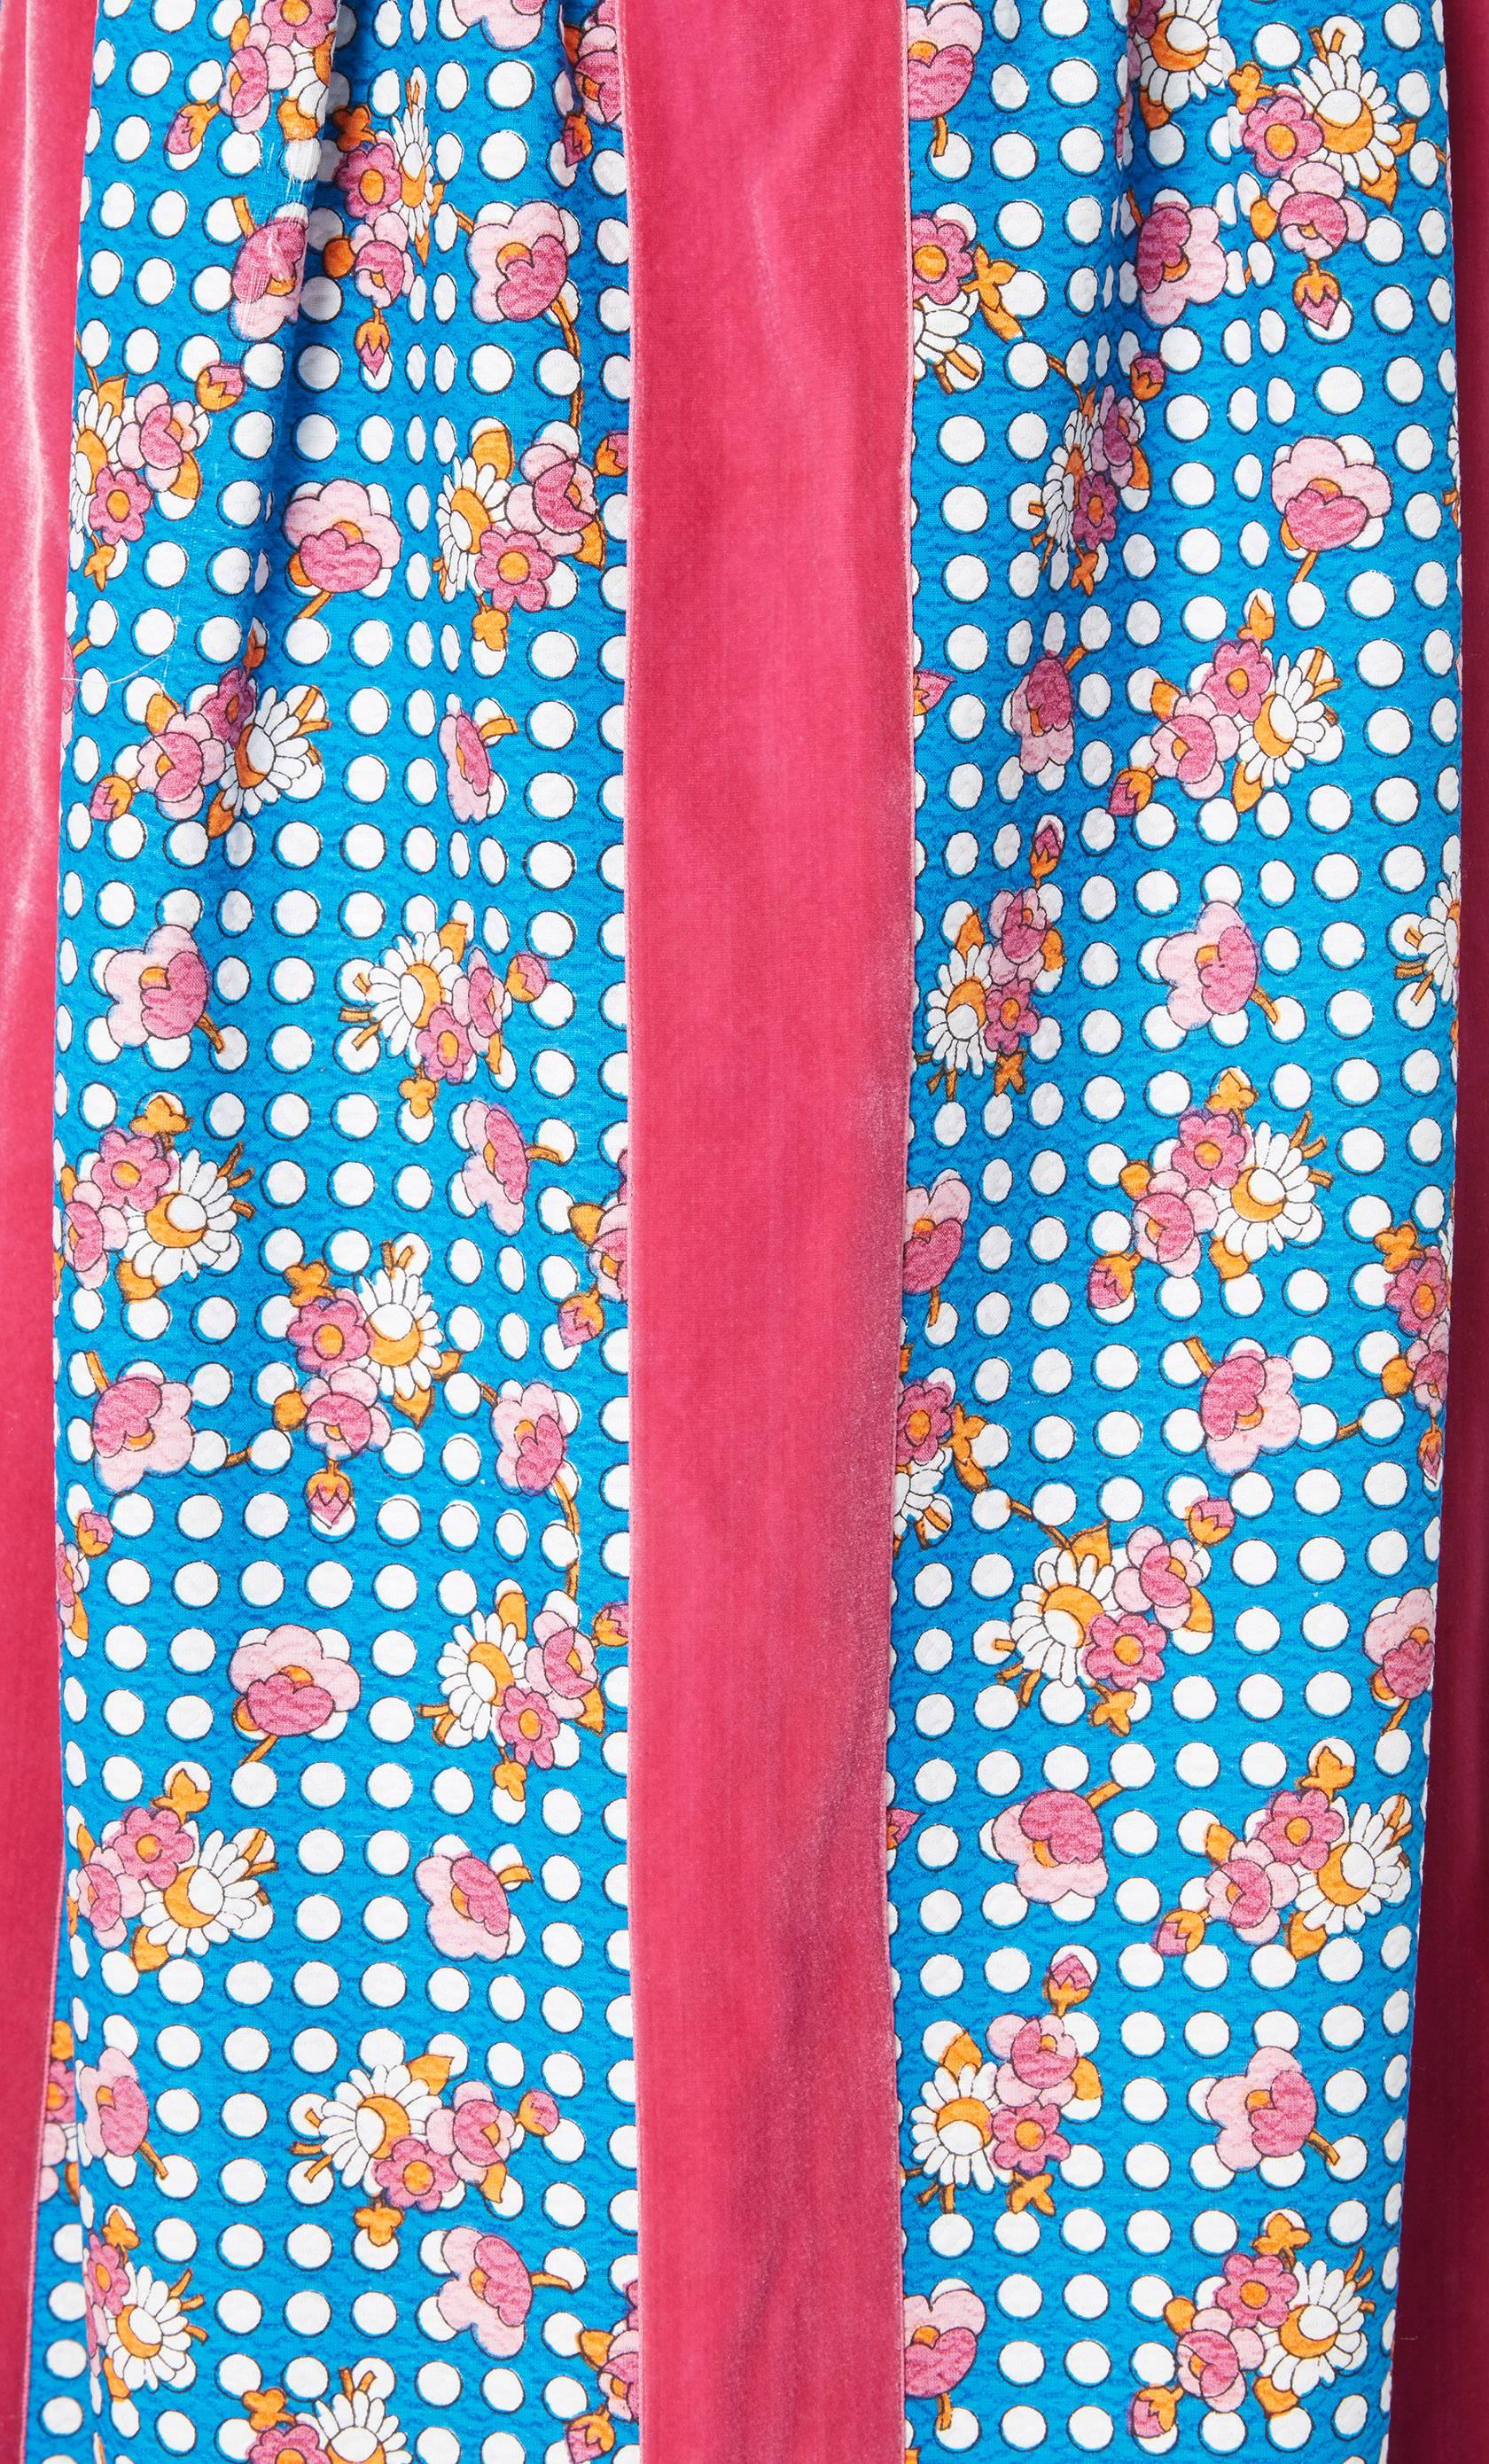 Women's Oscar de la Renta blue & pink printed maxi dress, circa 1968